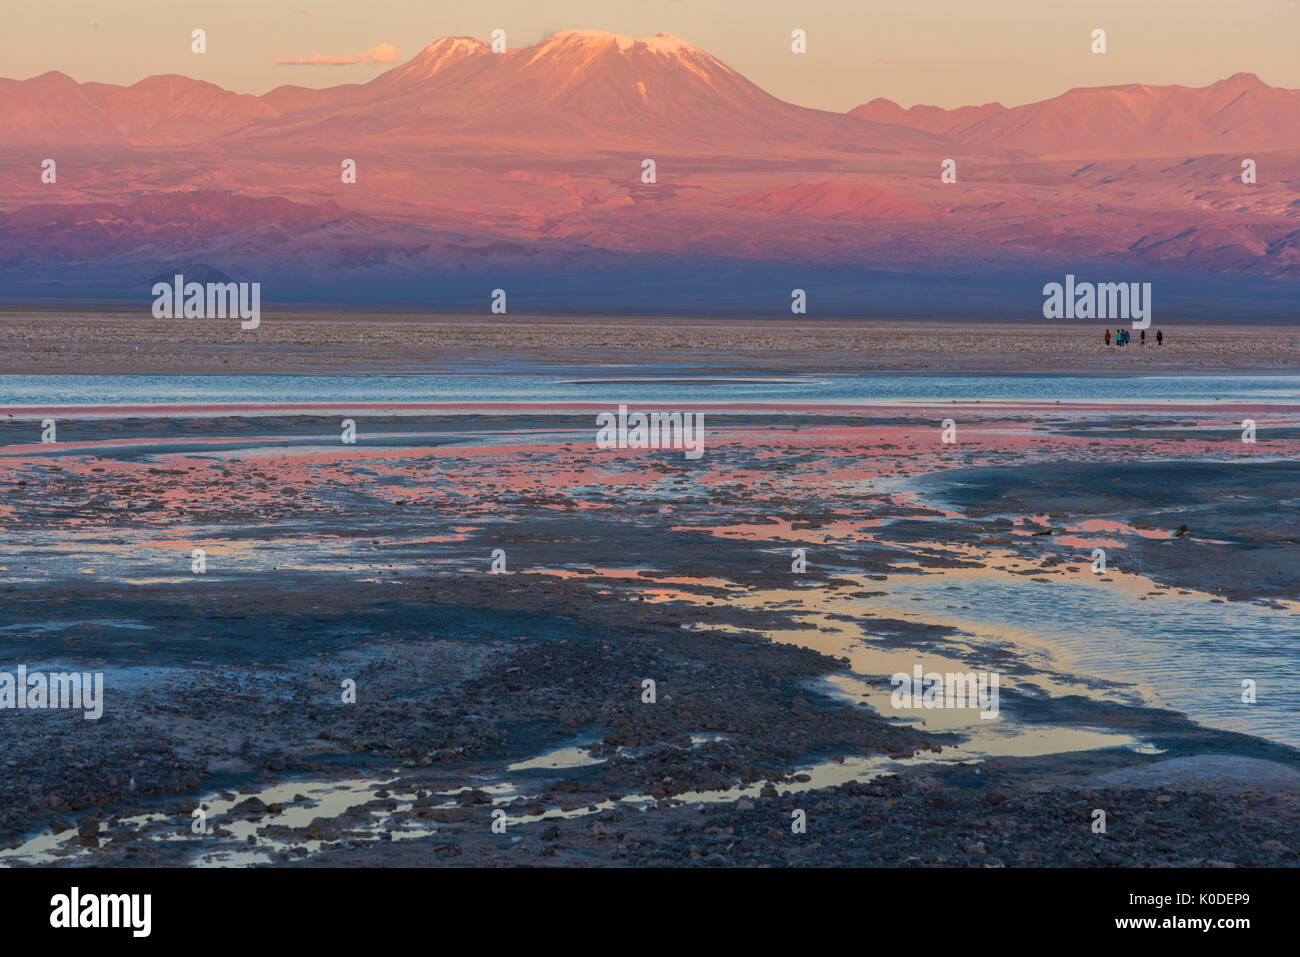 América del Sur, de los Andes, Atacama, San Pedro de Atacama, el Salar de Atacama al atardecer Foto de stock